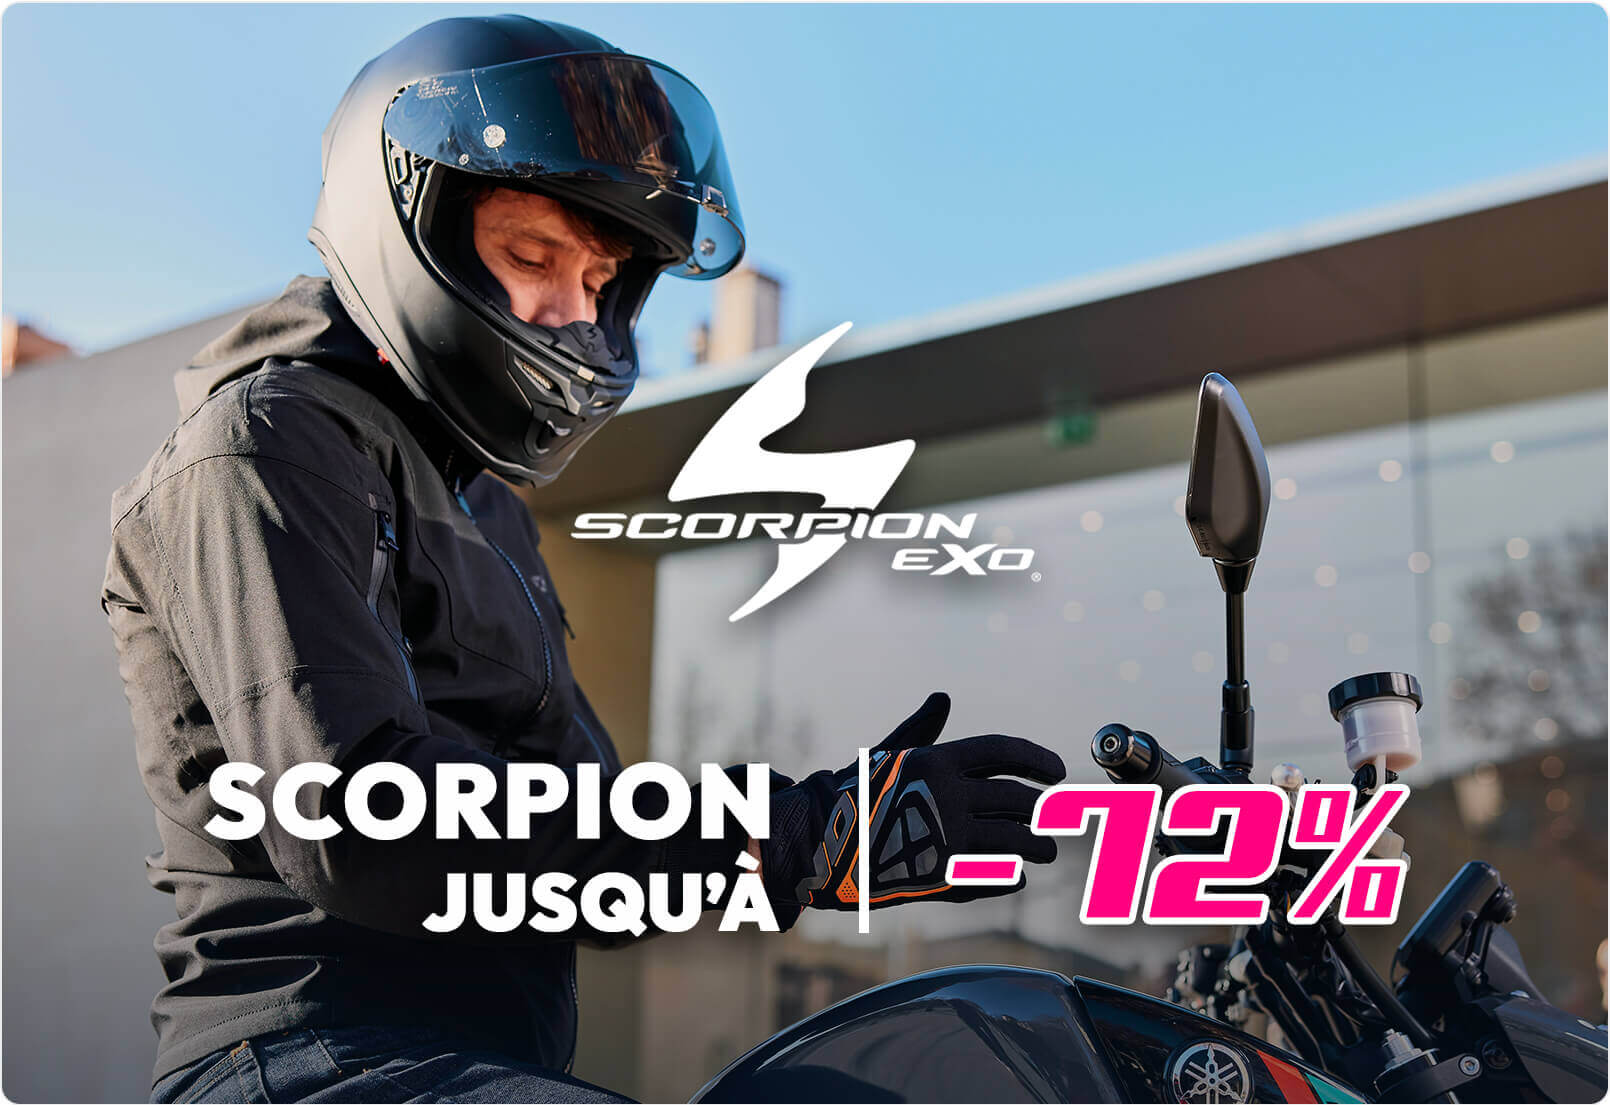 Casques Scorpion jusqu'à -72%